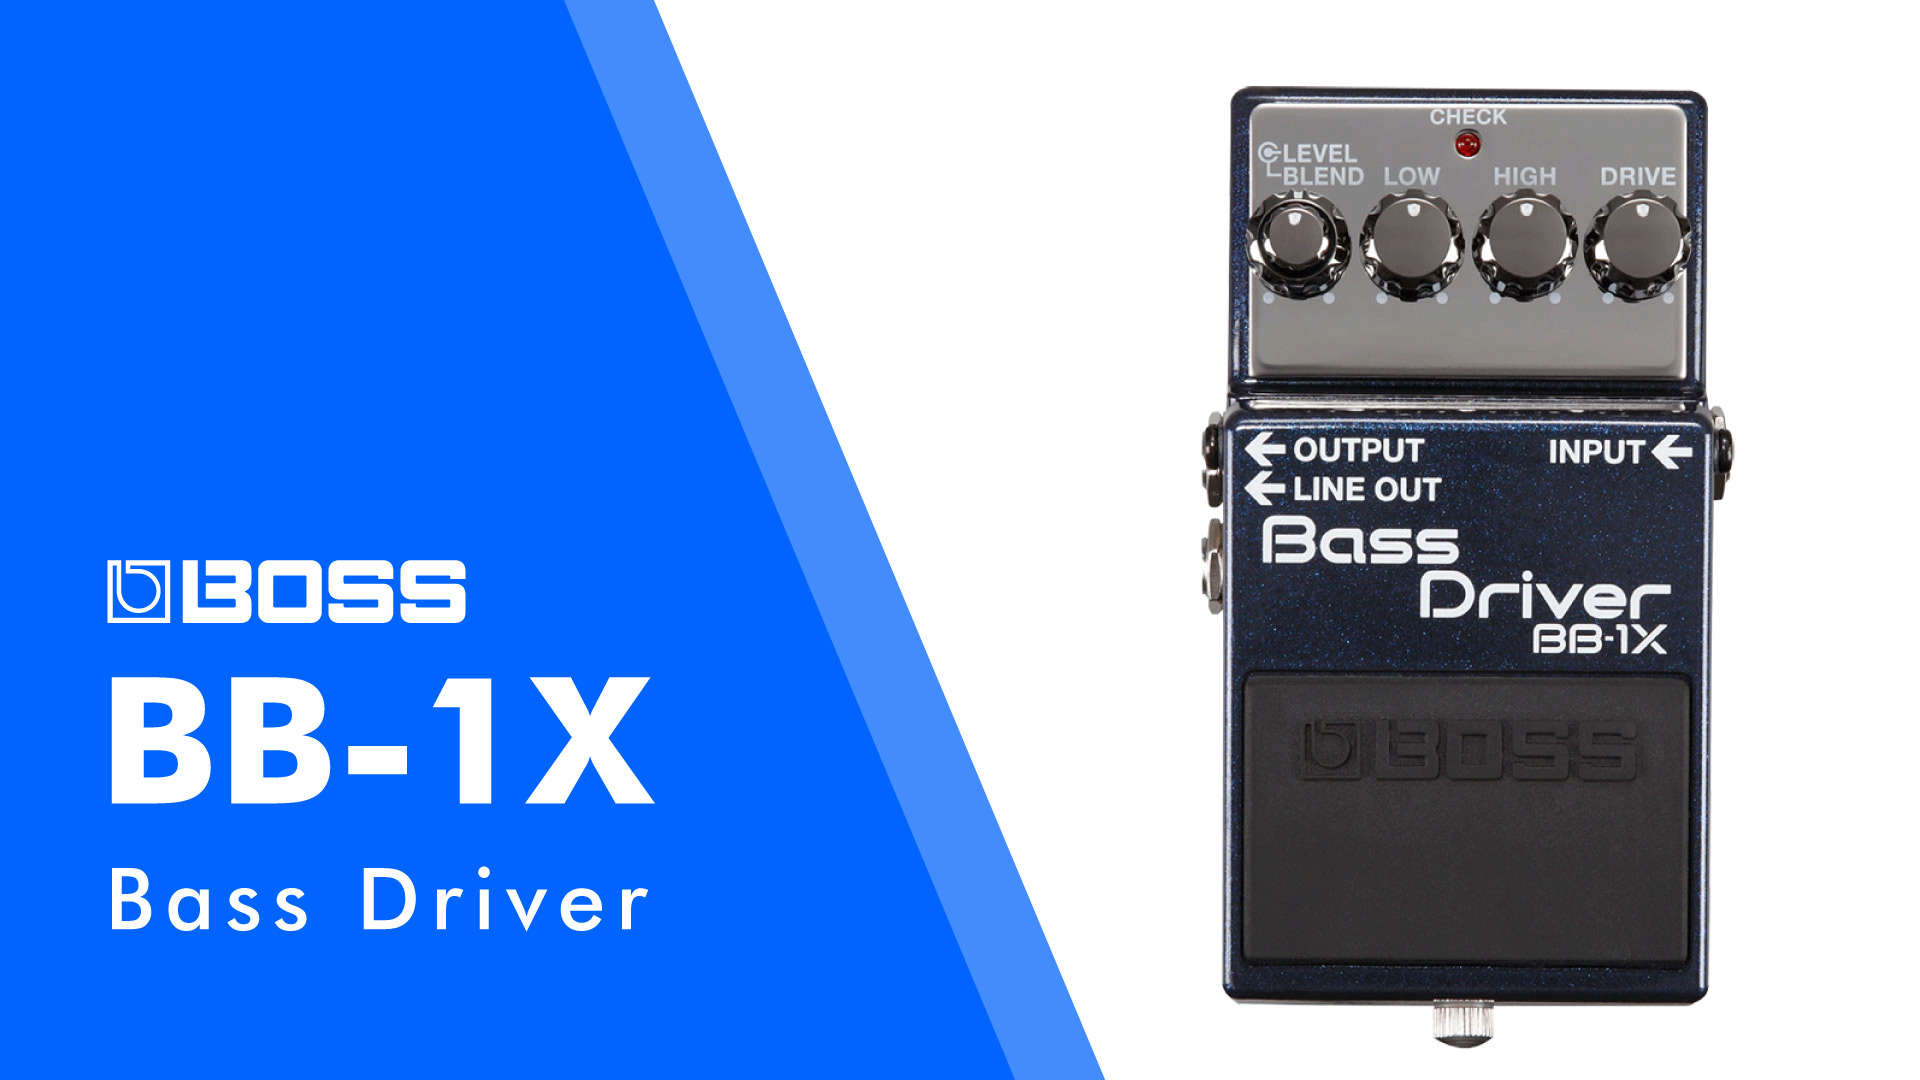 BOSS BB-1X Bass Driver 